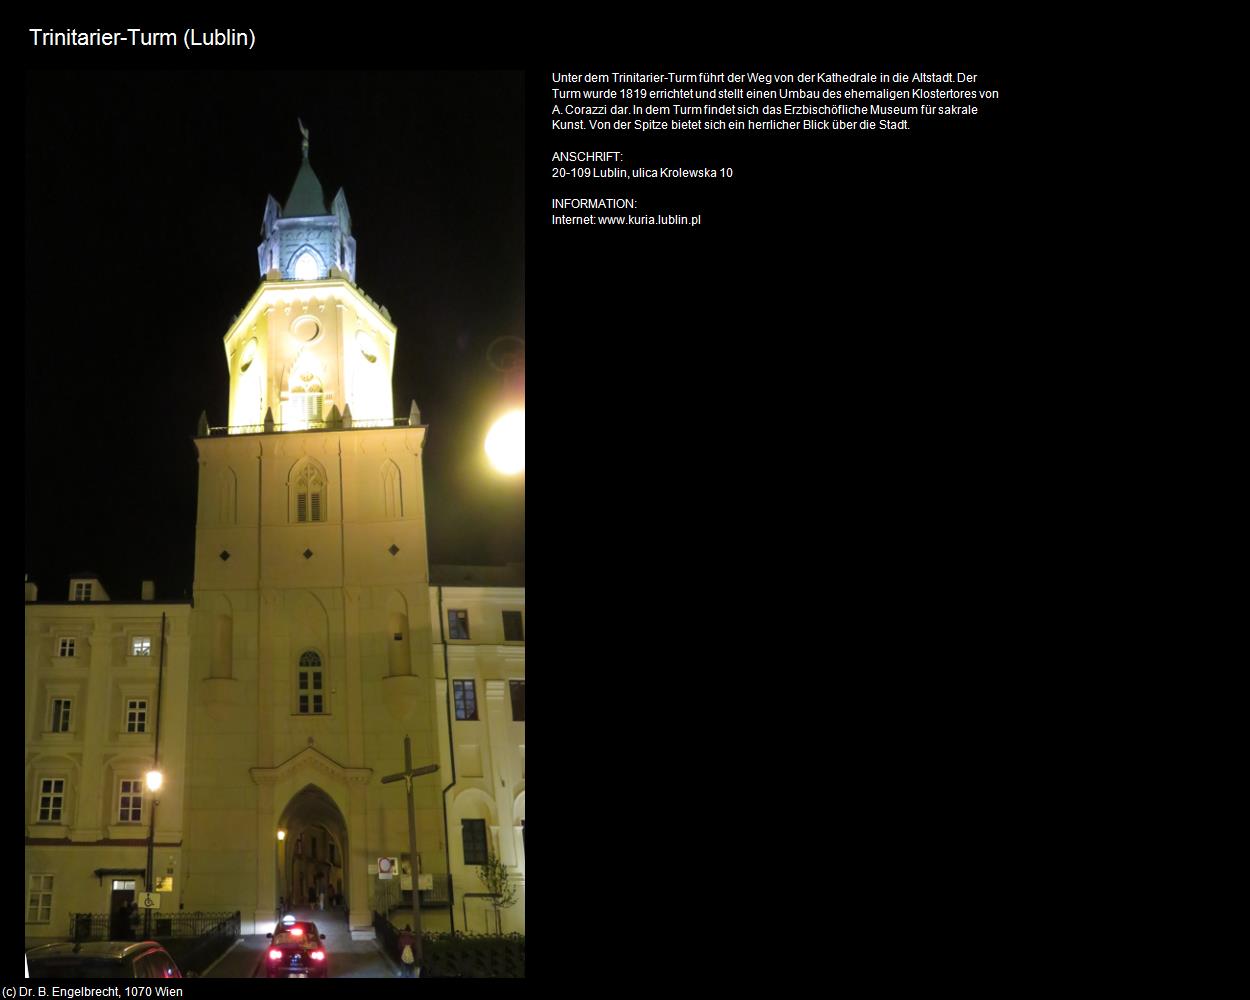 Trinitarier-Turm (Lublin) in POLEN-Galizien